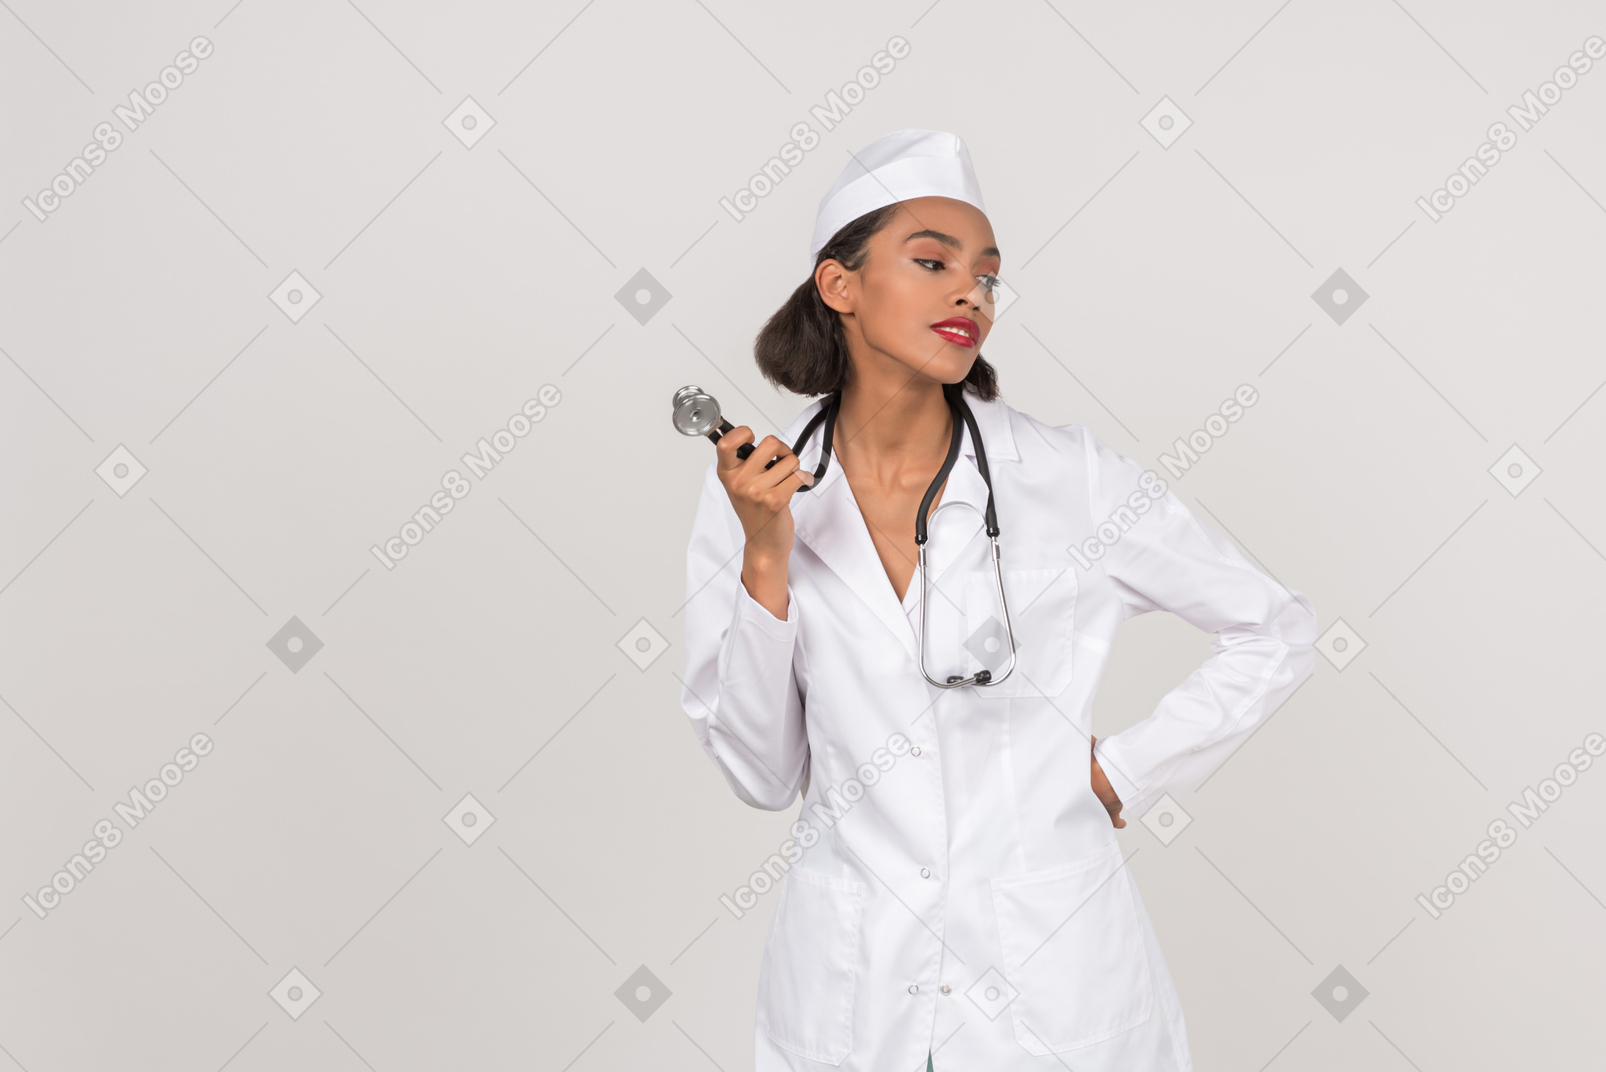 Attraente giovane dottoressa in possesso di uno stetoscopio